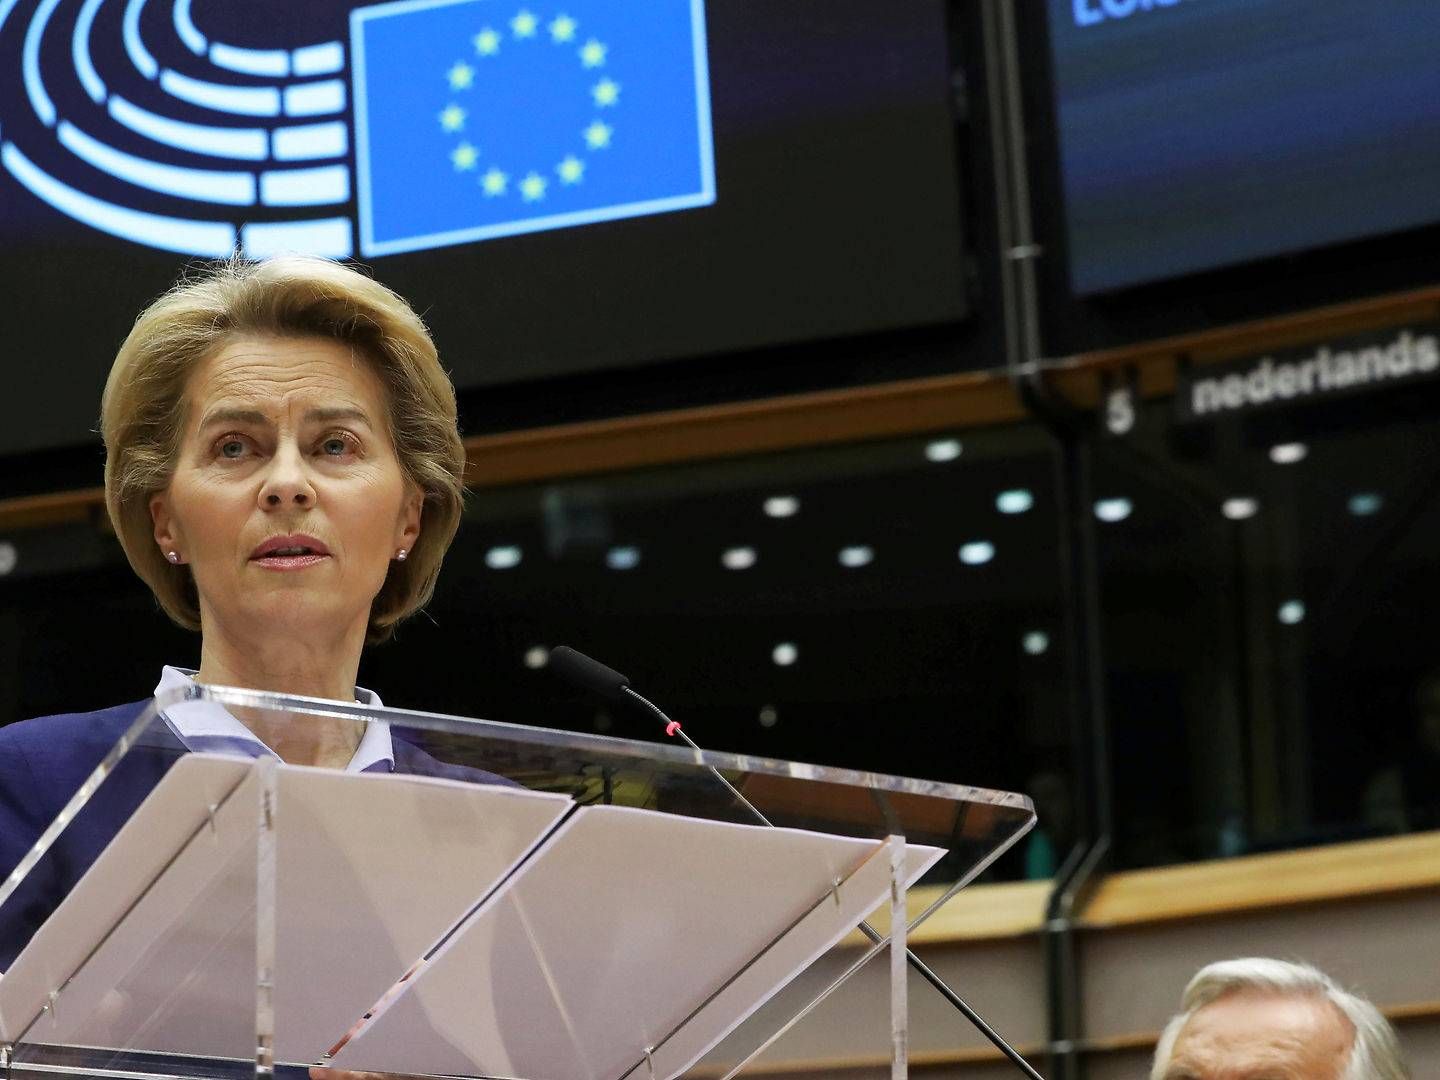 EU's kommissionsformand, Ursula von der Leyen, har selv mistet en lillesøster til kræft. | Foto: Yves Herman/Reuters/Ritzau Scanpix